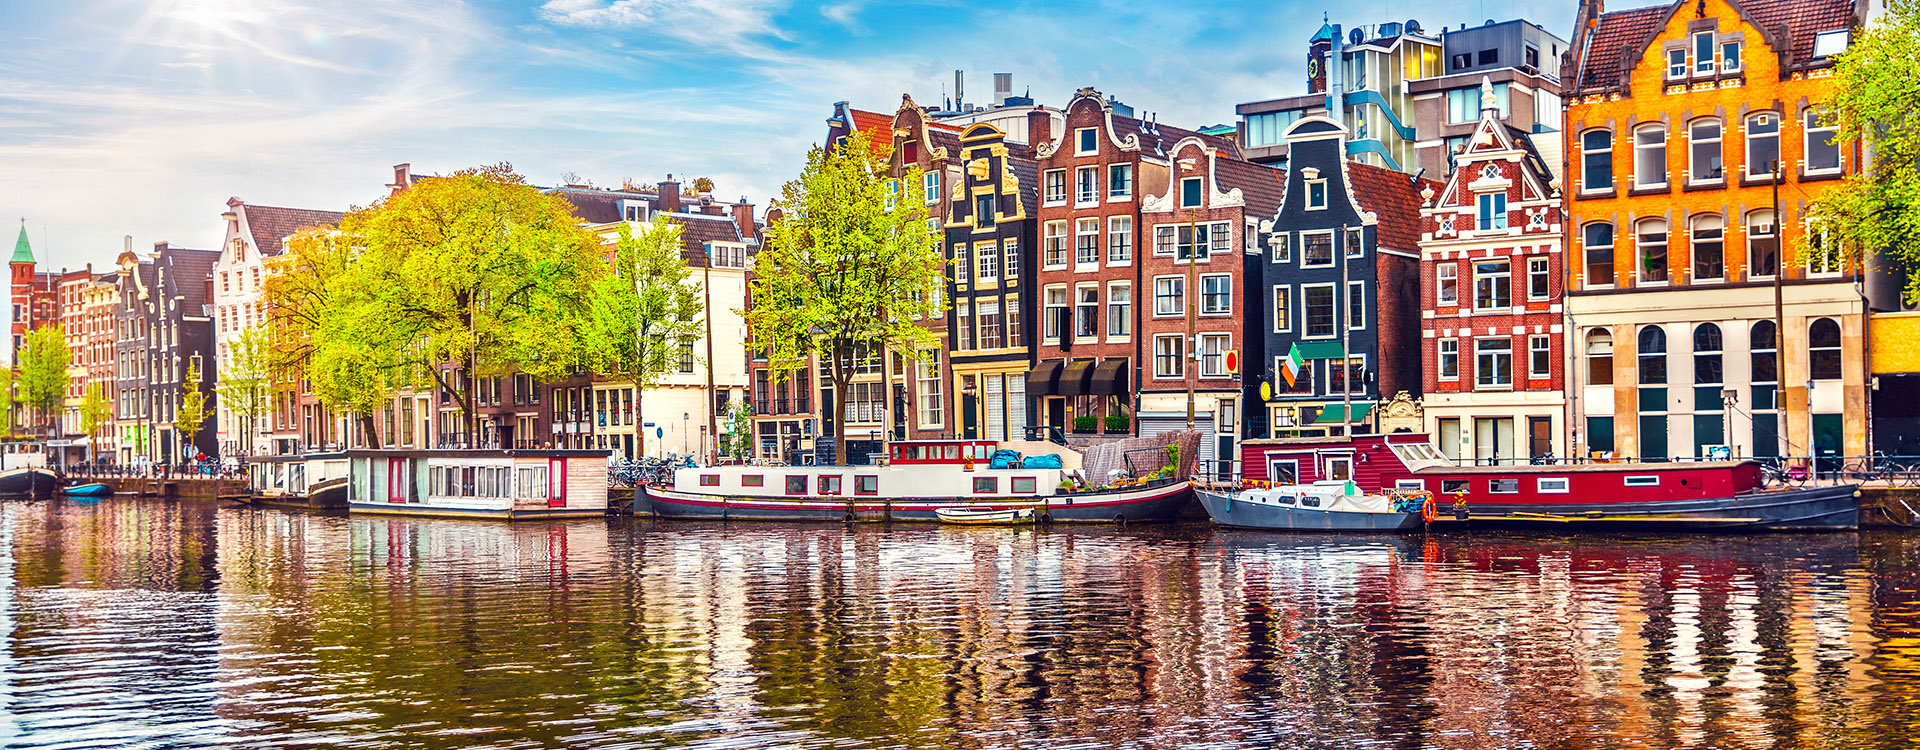 Amsterdam Netherlands dancing houses over river Amstel landmark in old european city spring landscape